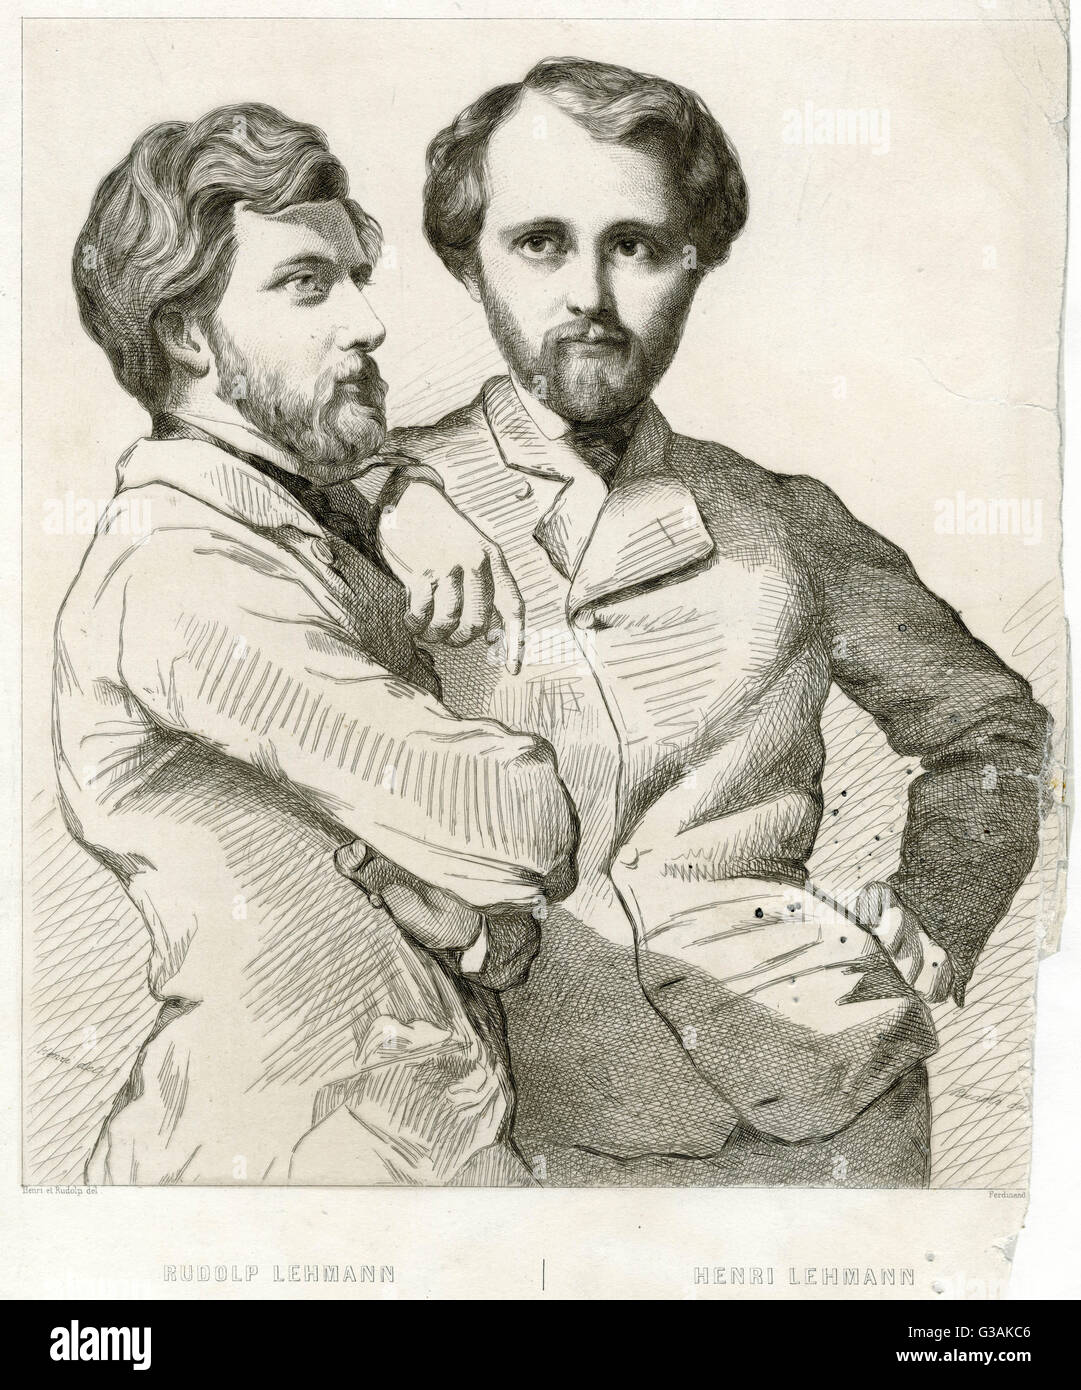 Rodolf Lehmann (izquierda), alemán nacido, conocido retratista con su hermano Henri Lehmann (derecha), (1814 1882), alemán de nacimiento histórico francés pintor y retratista. Foto de stock